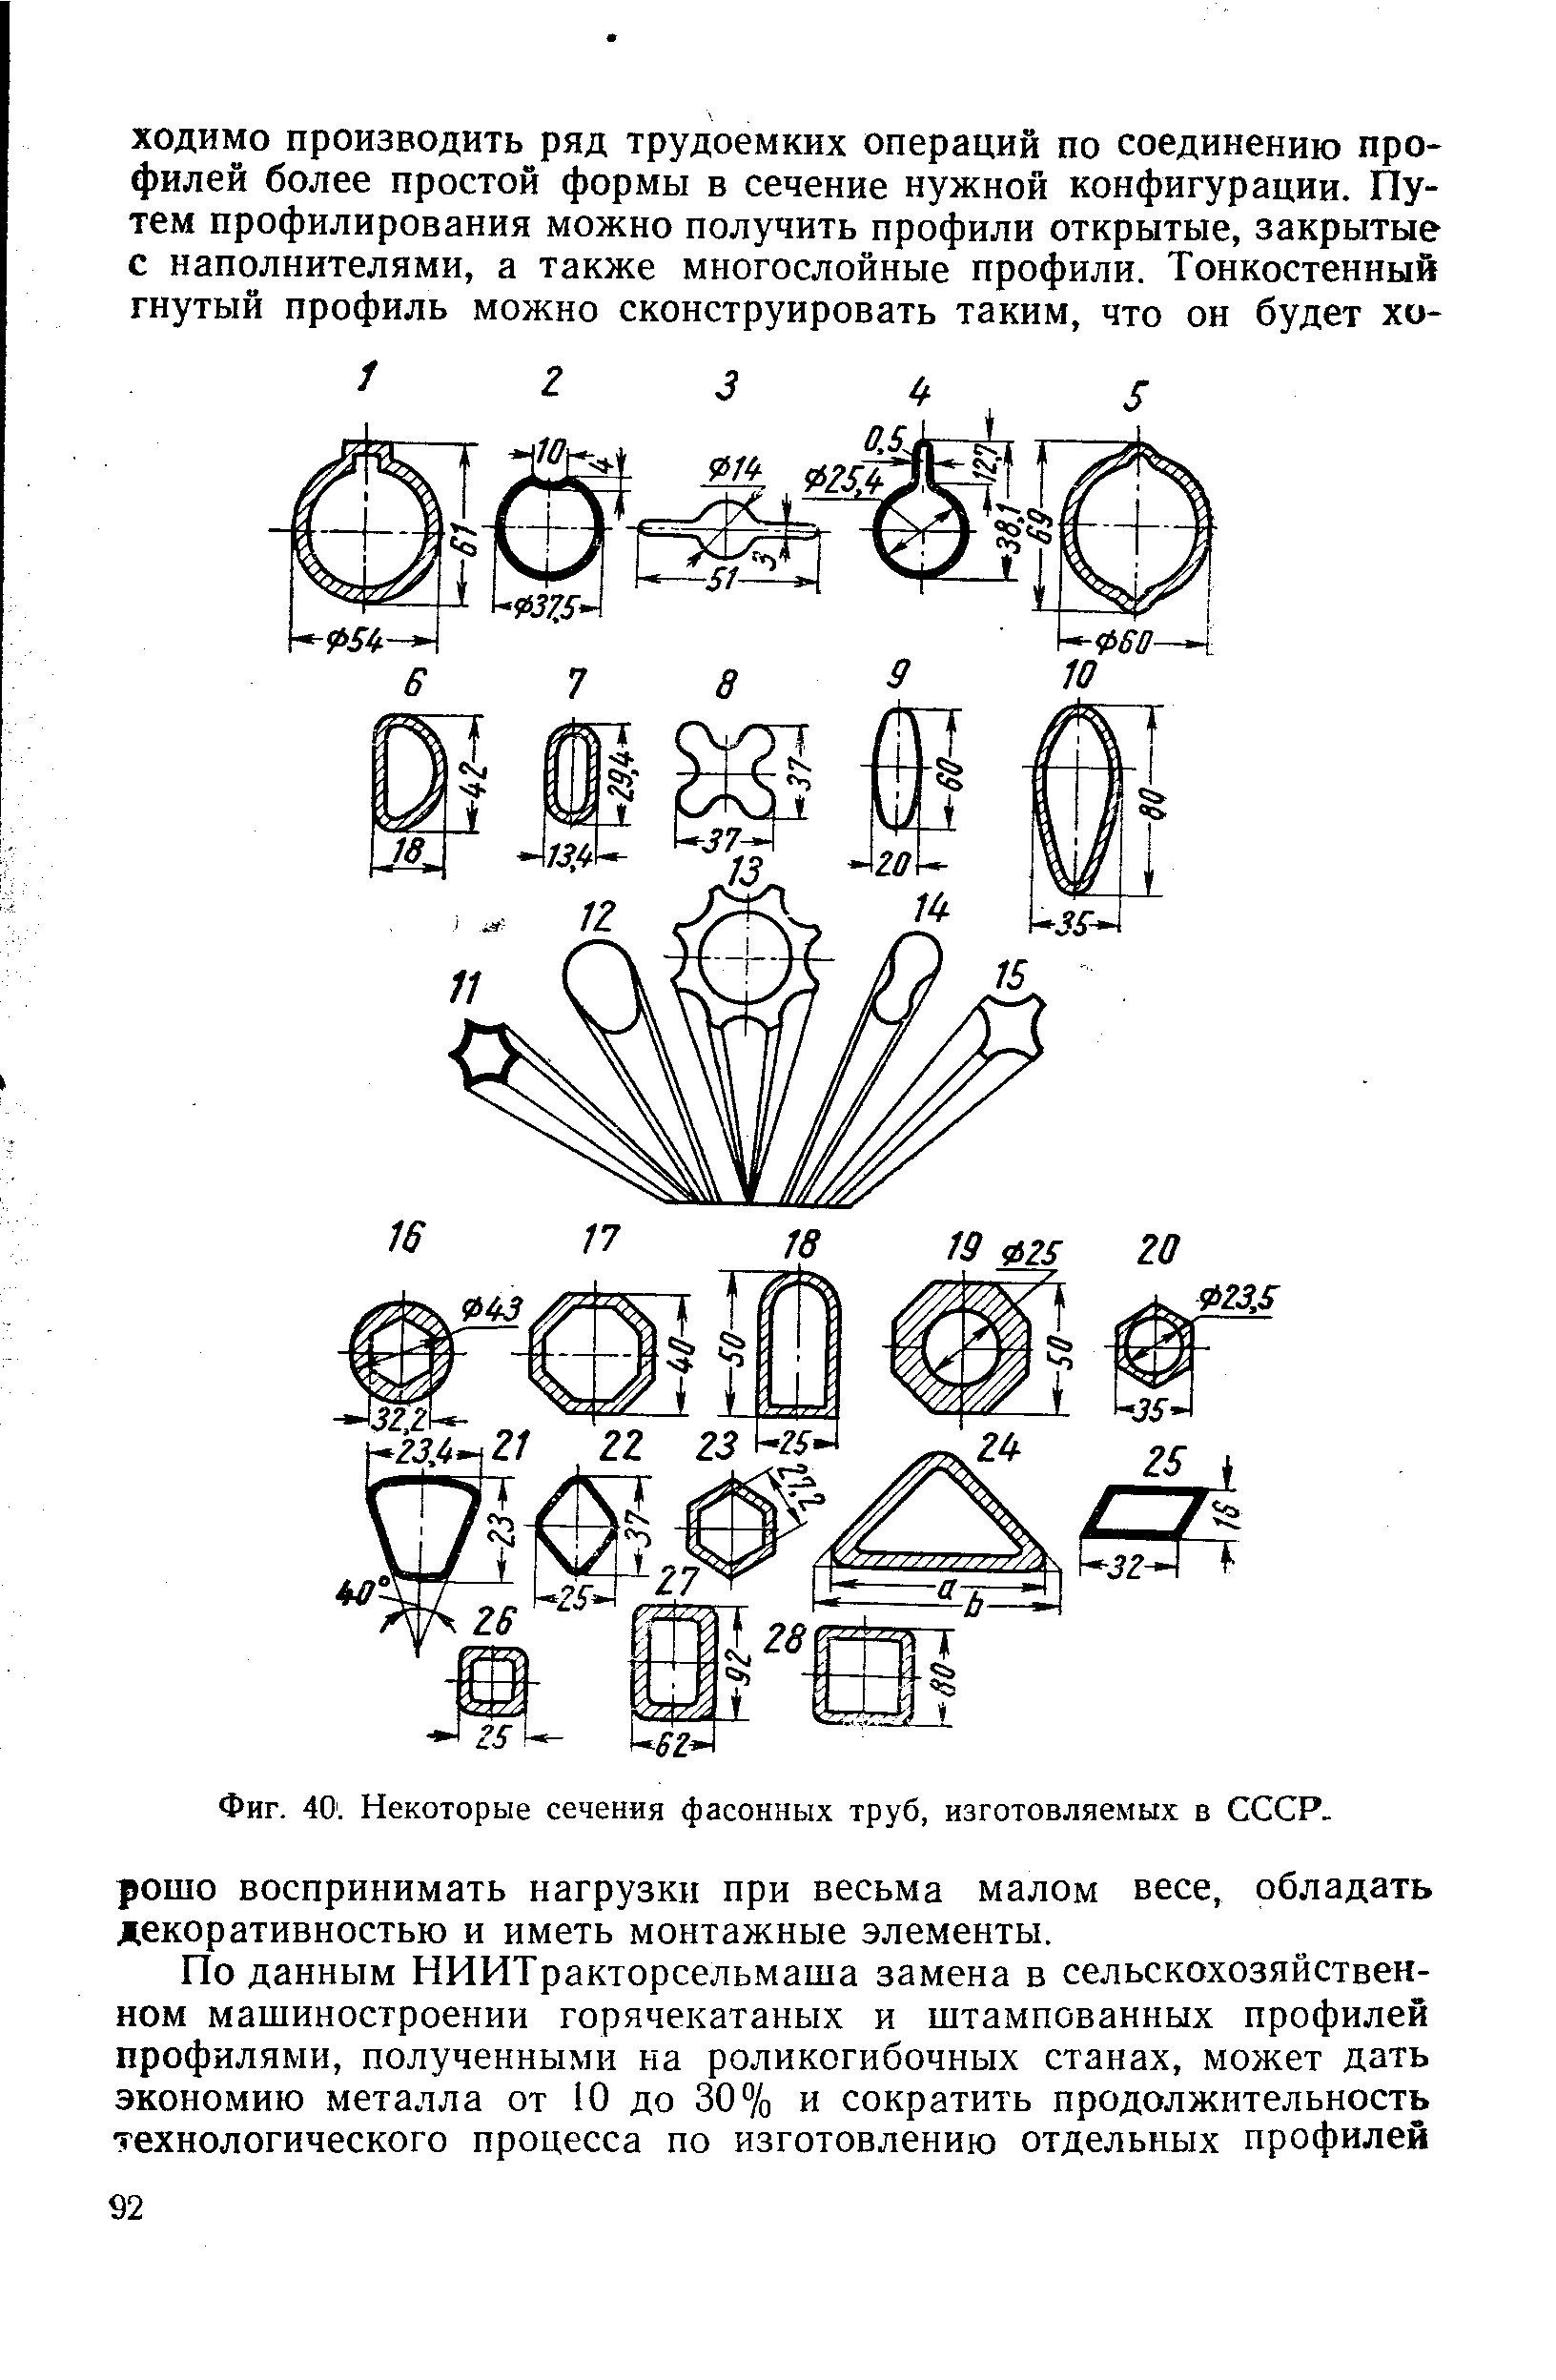 Фиг. 40. Некоторые сечения фасонных труб, изготовляемых в СССР.
